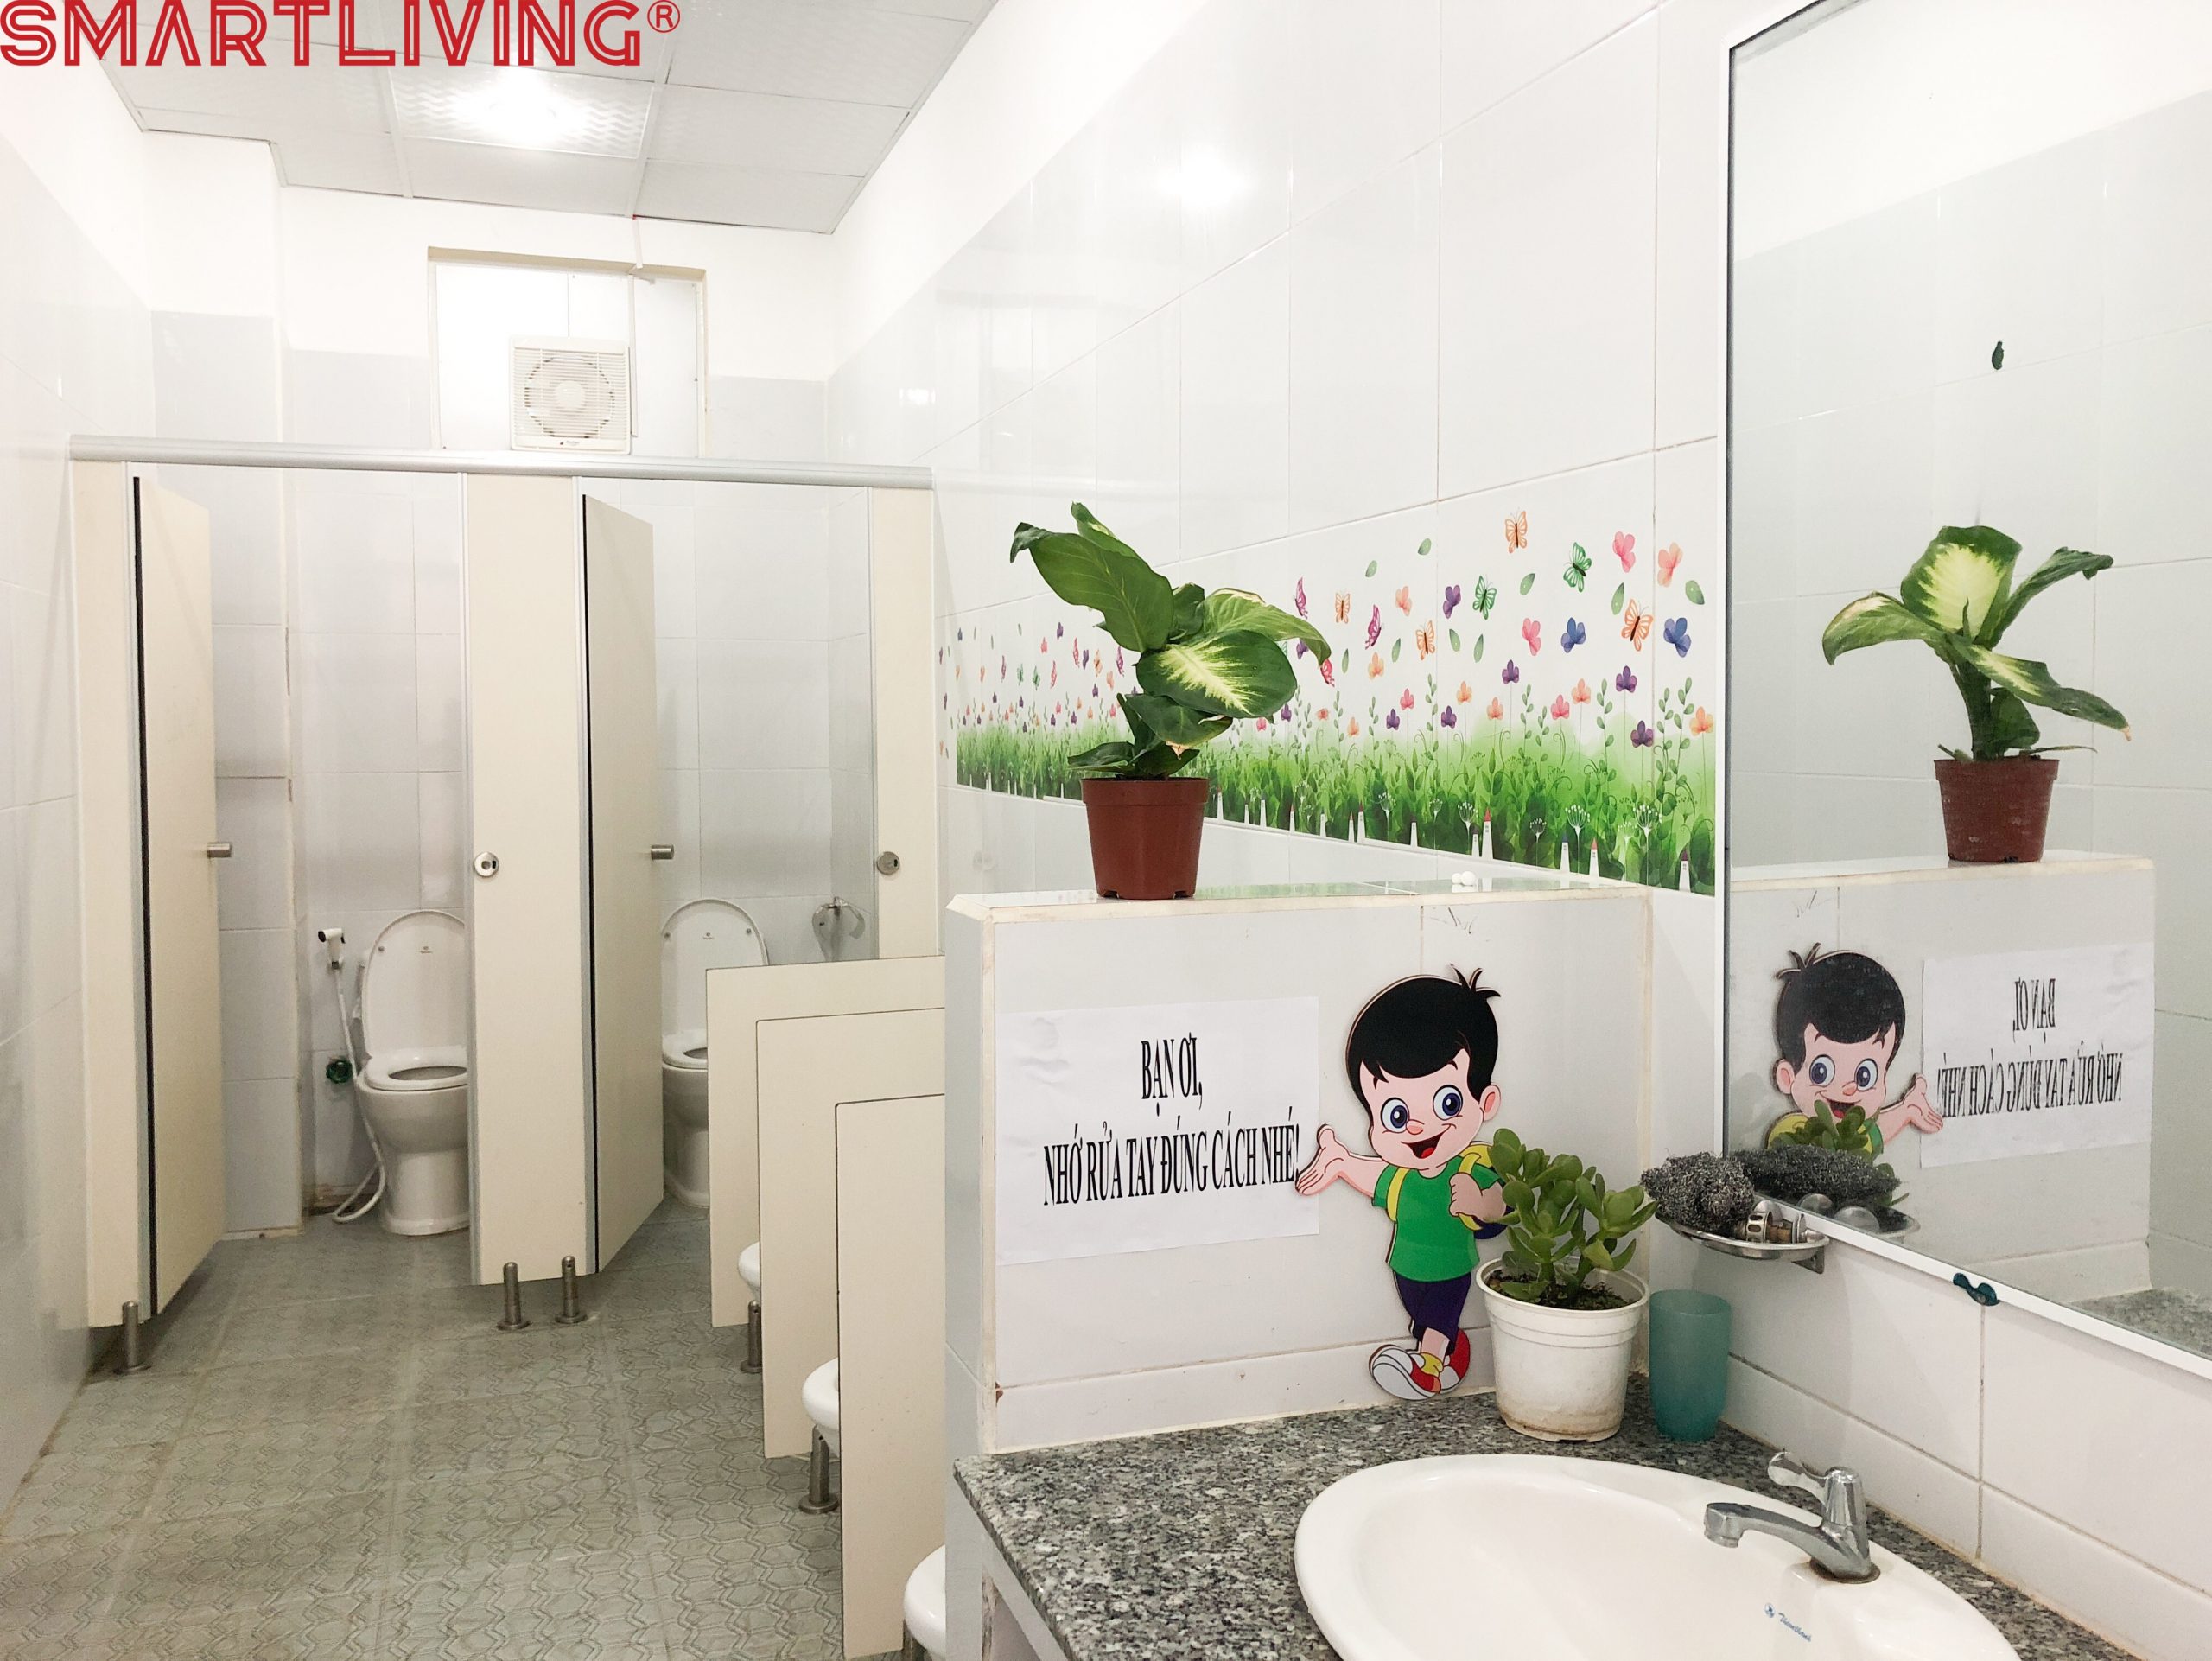 Thiết kế nhà vệ sinh cho bé trong trường mầm non